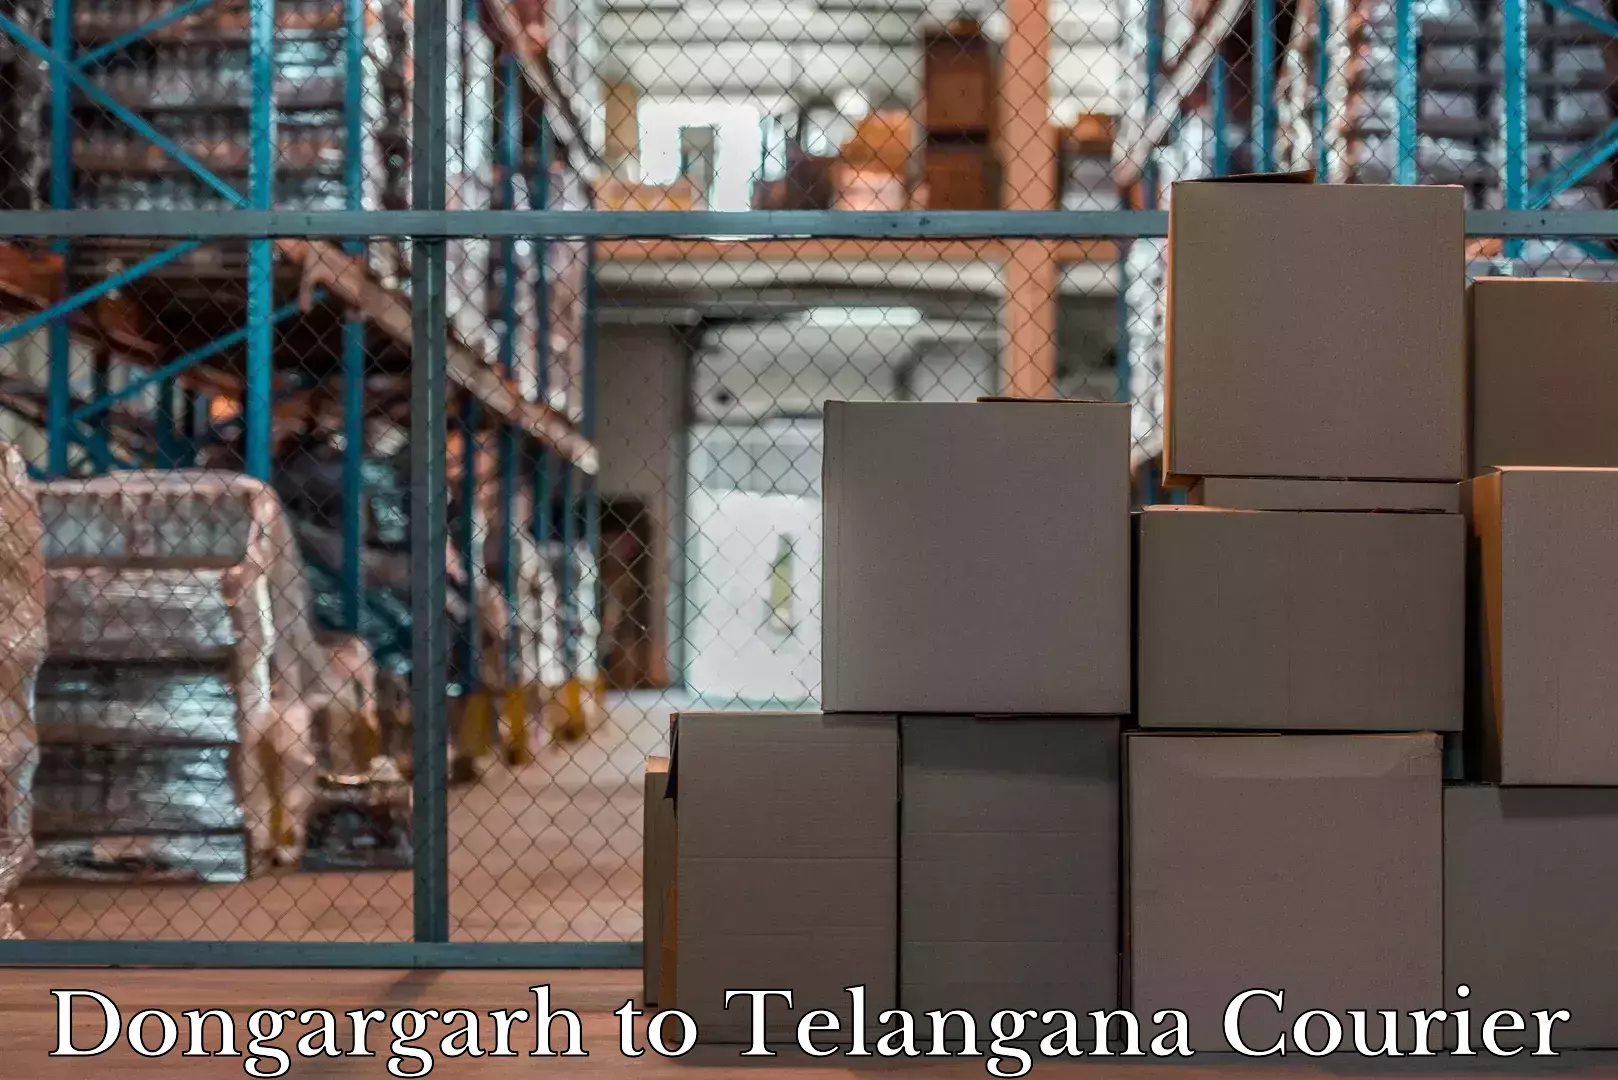 Baggage transport coordination Dongargarh to Warangal